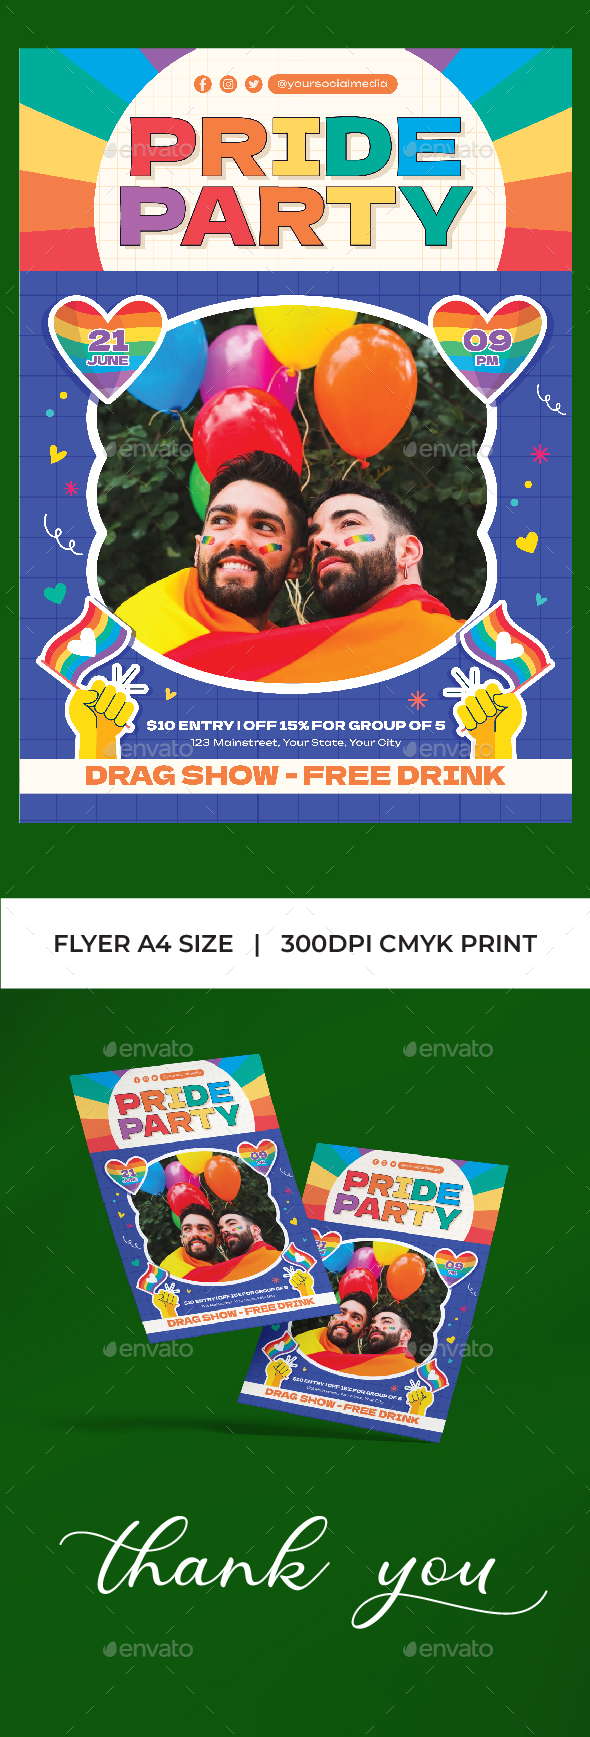 [DOWNLOAD]Pride Party Flyer